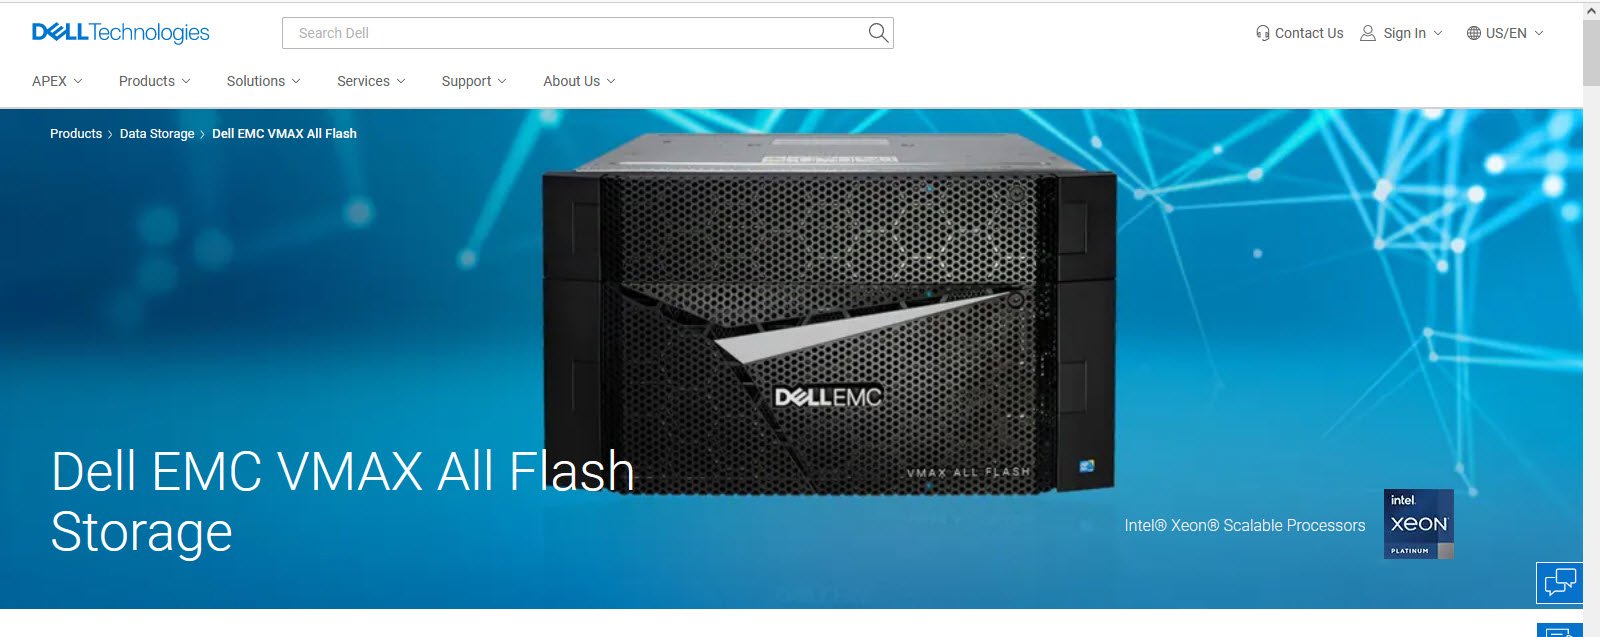 DELL EMC VMAX All Flash Cloud Storage Hardware topattop